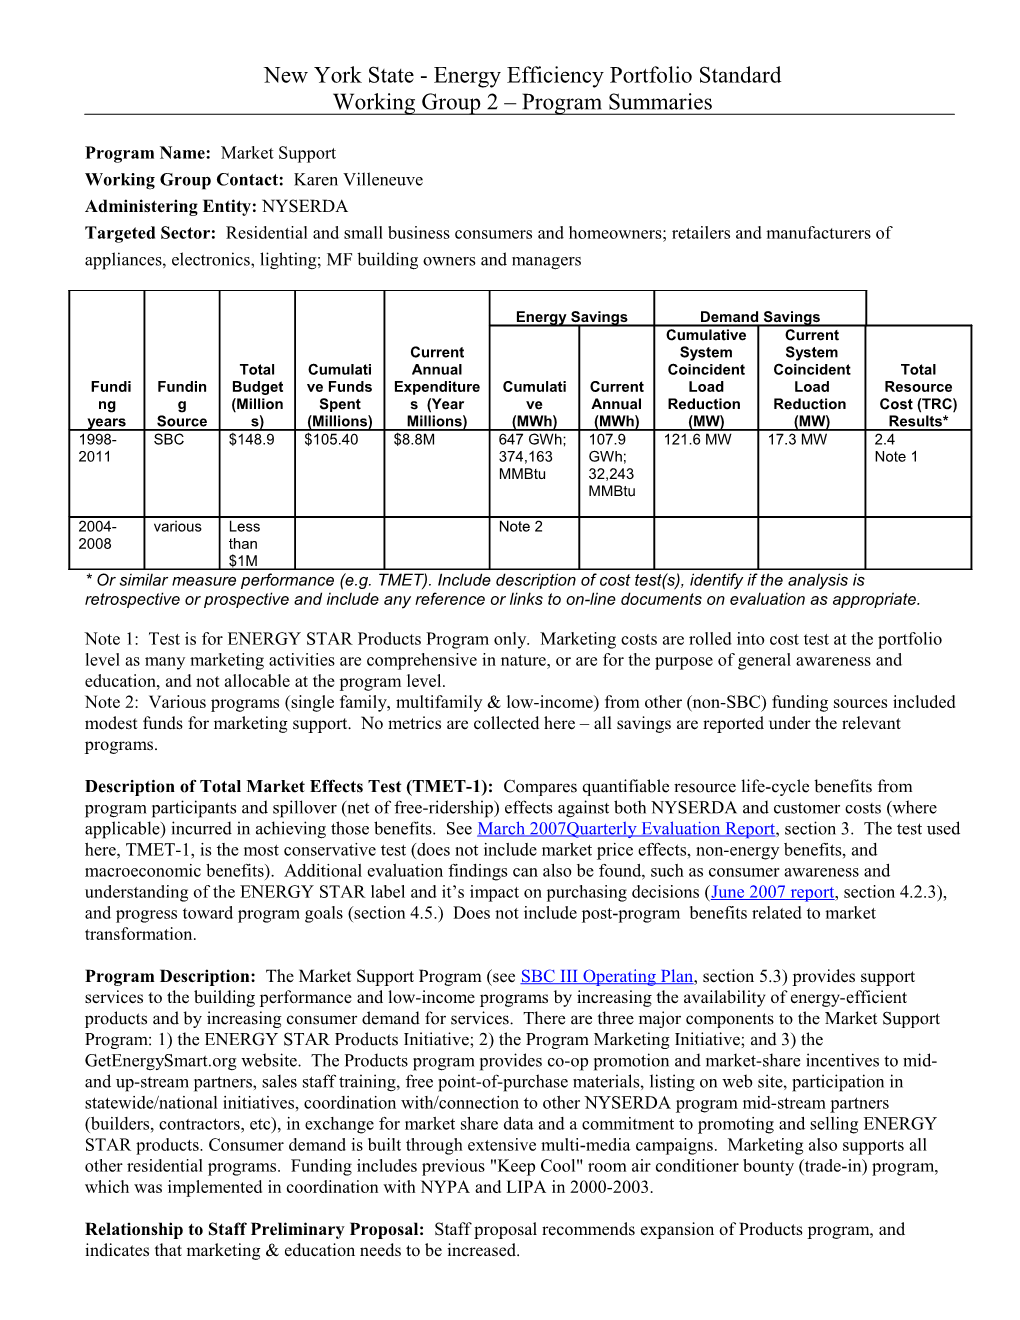 NY EPS - EE Program Summary Template